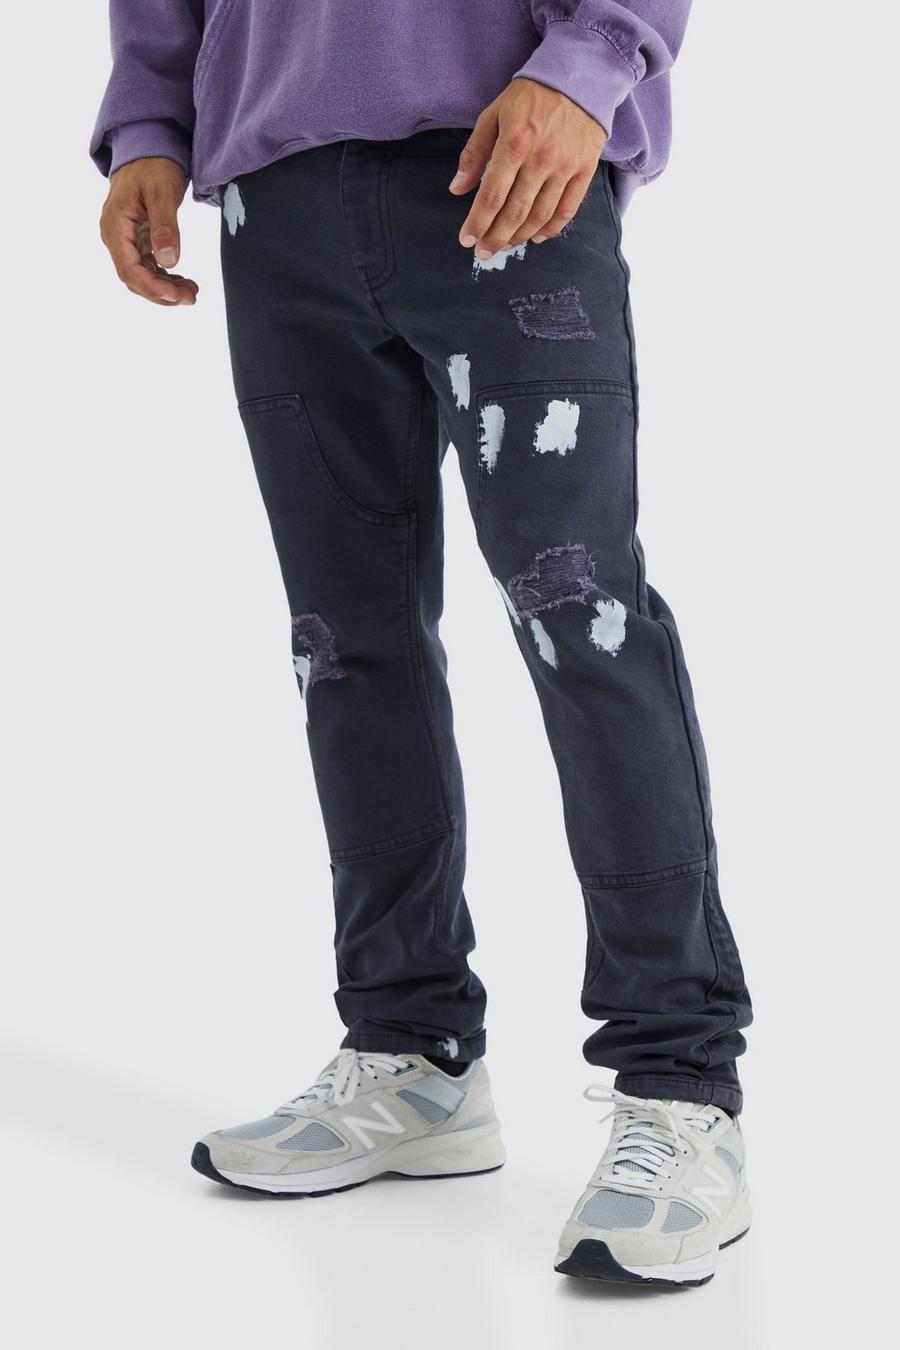 Jeans Slim Fit con pannelli da lavoro e schizzi di colore, Mid grey grigio